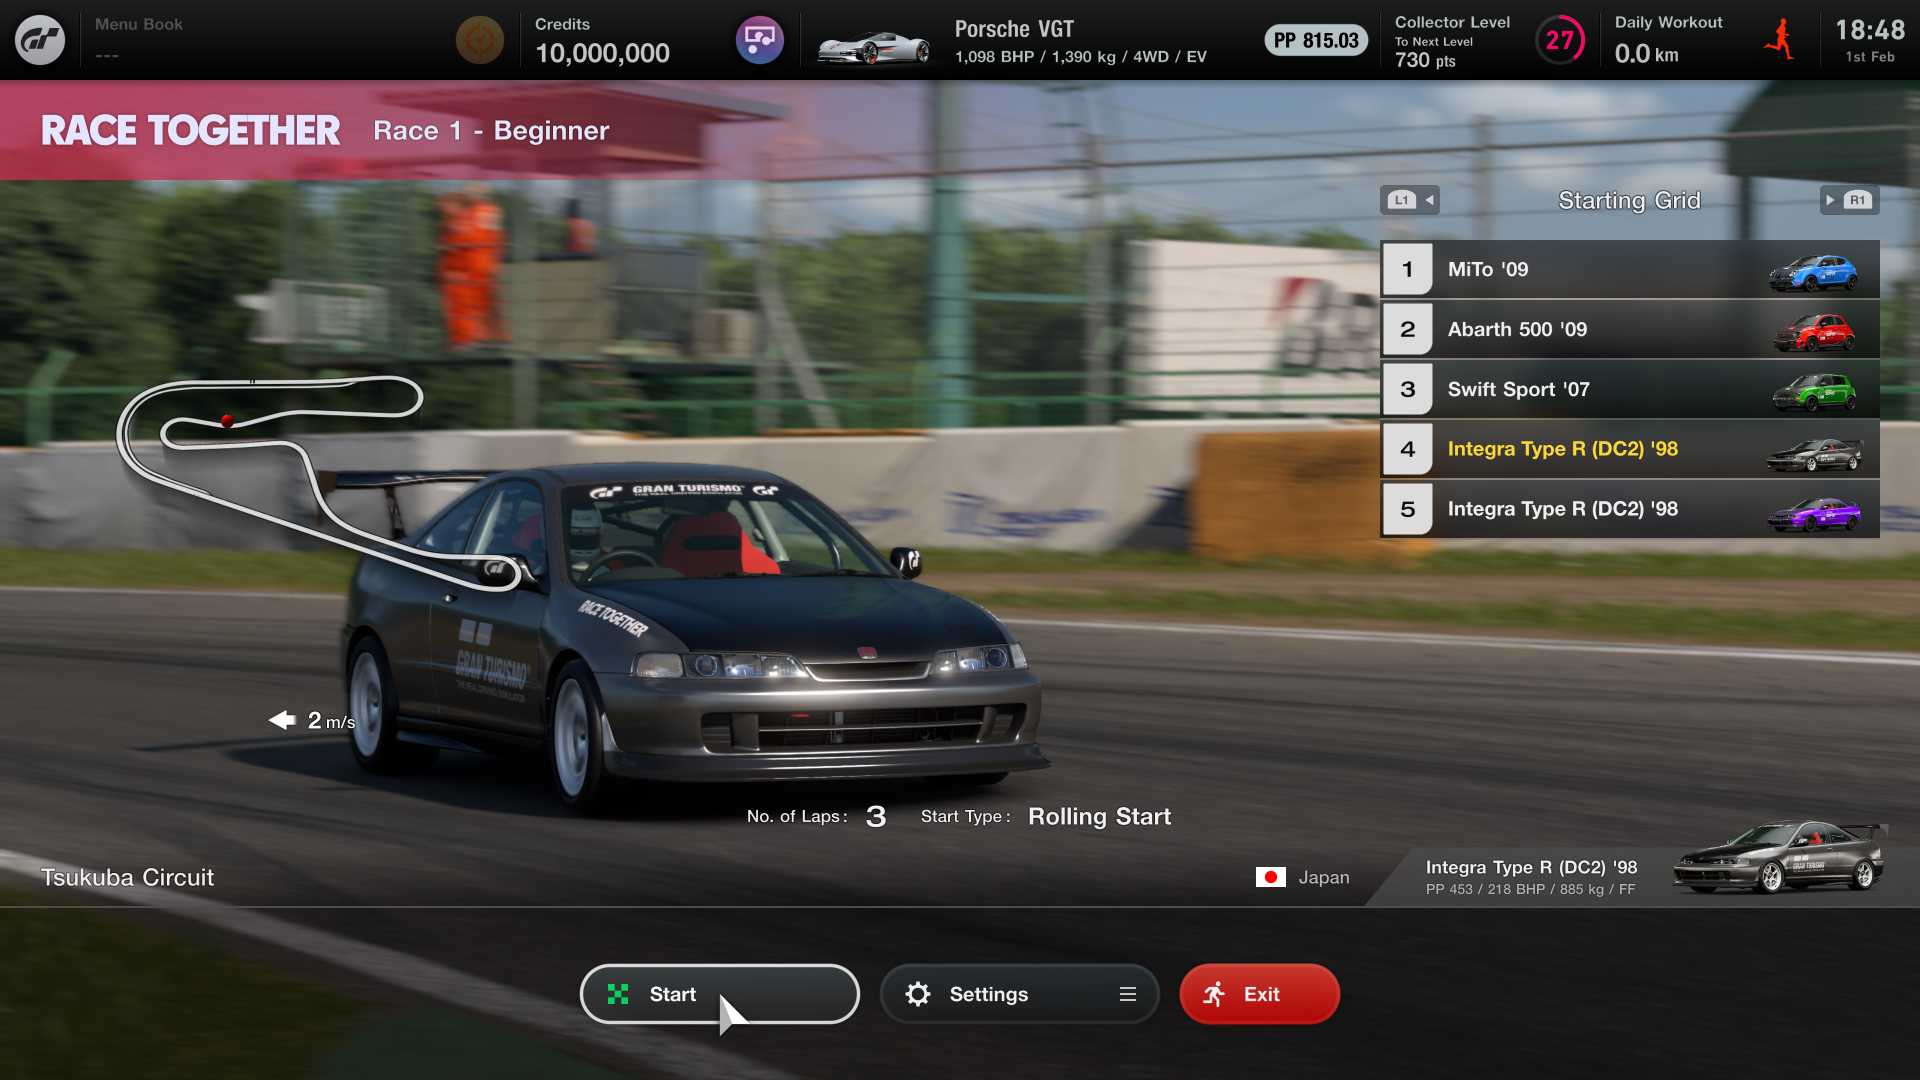 Sony har udgivet en forbedret Sophy 2.0 AI-racer til Gran Turismo 7